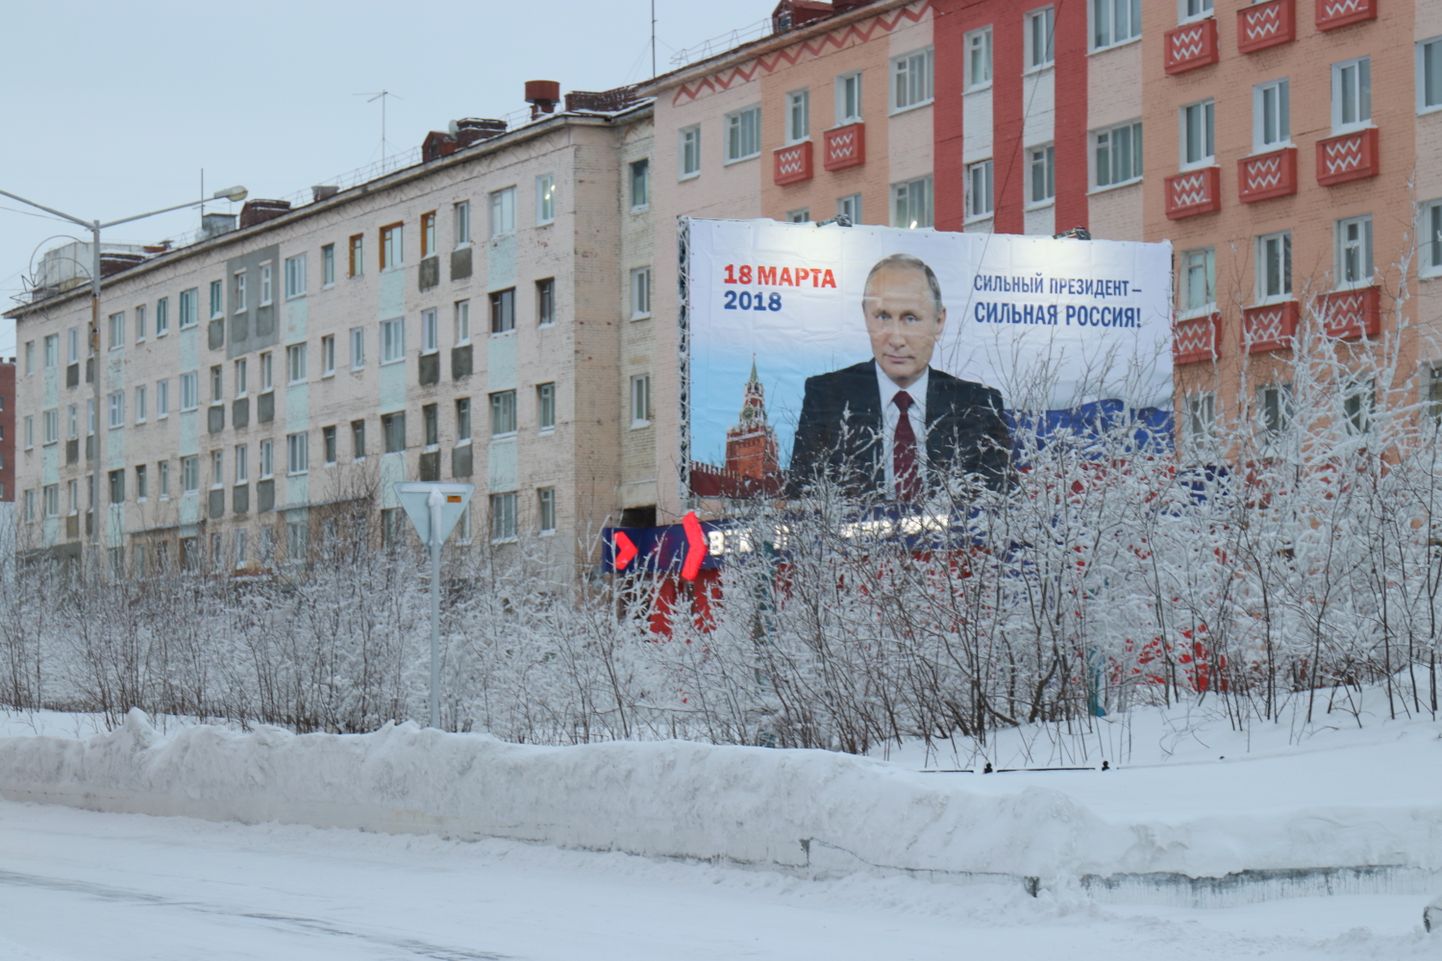 Vladimir Putini valimisreklaamid rõhutavad ühte lihtsat asja: tänane Venemaa peab kõiges olema tänulik temale, Putin on loonud tänase Venemaa. Reklaam talvises polaarlinnas Norilskis.